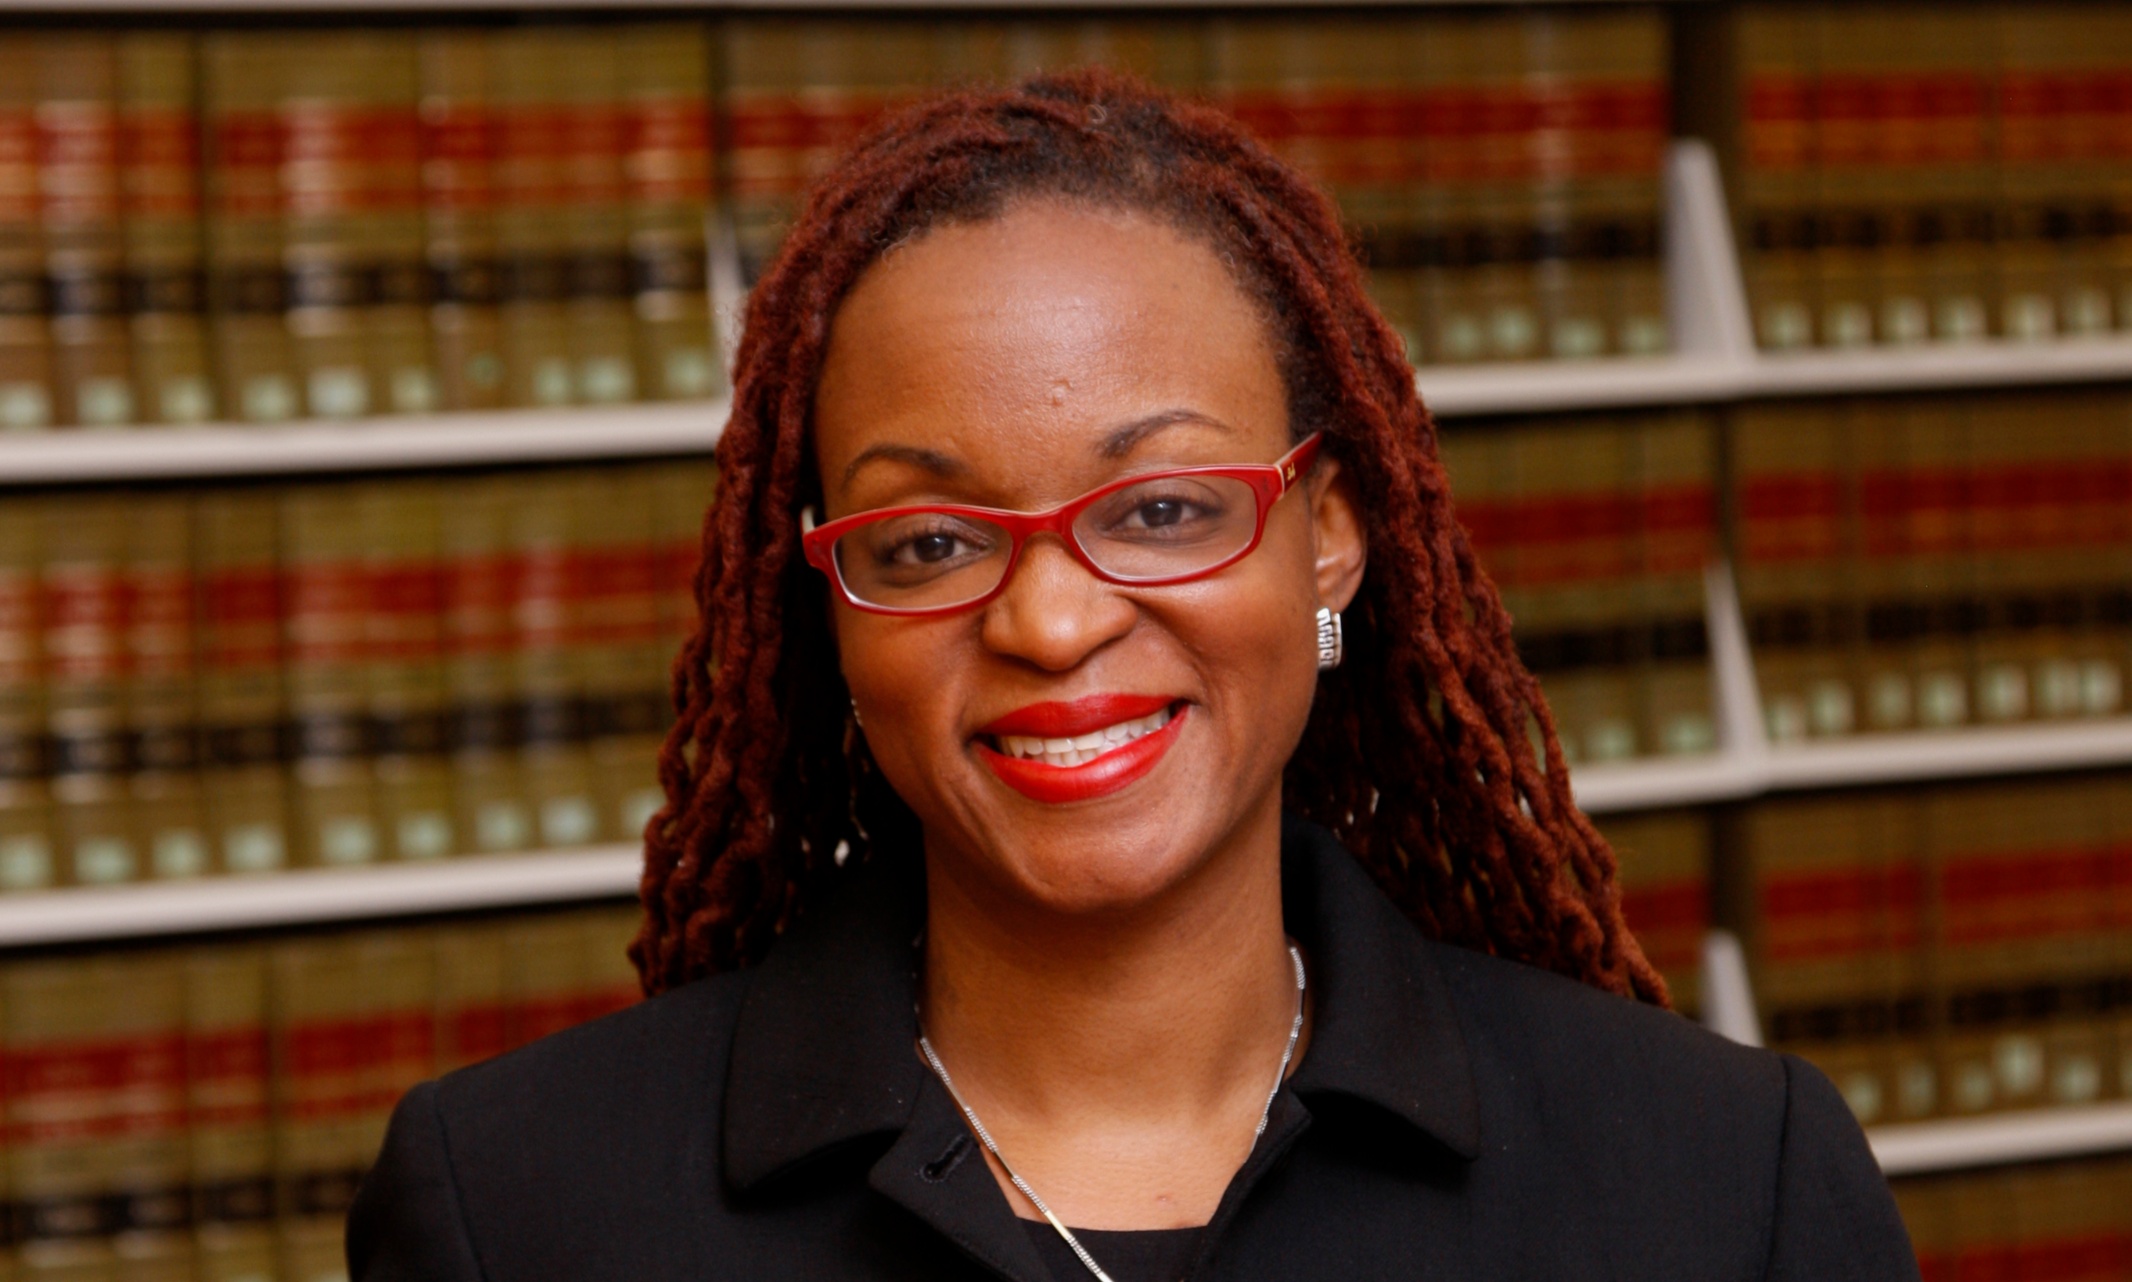 Jamila Jefferson-Jones portrait taken in a law library